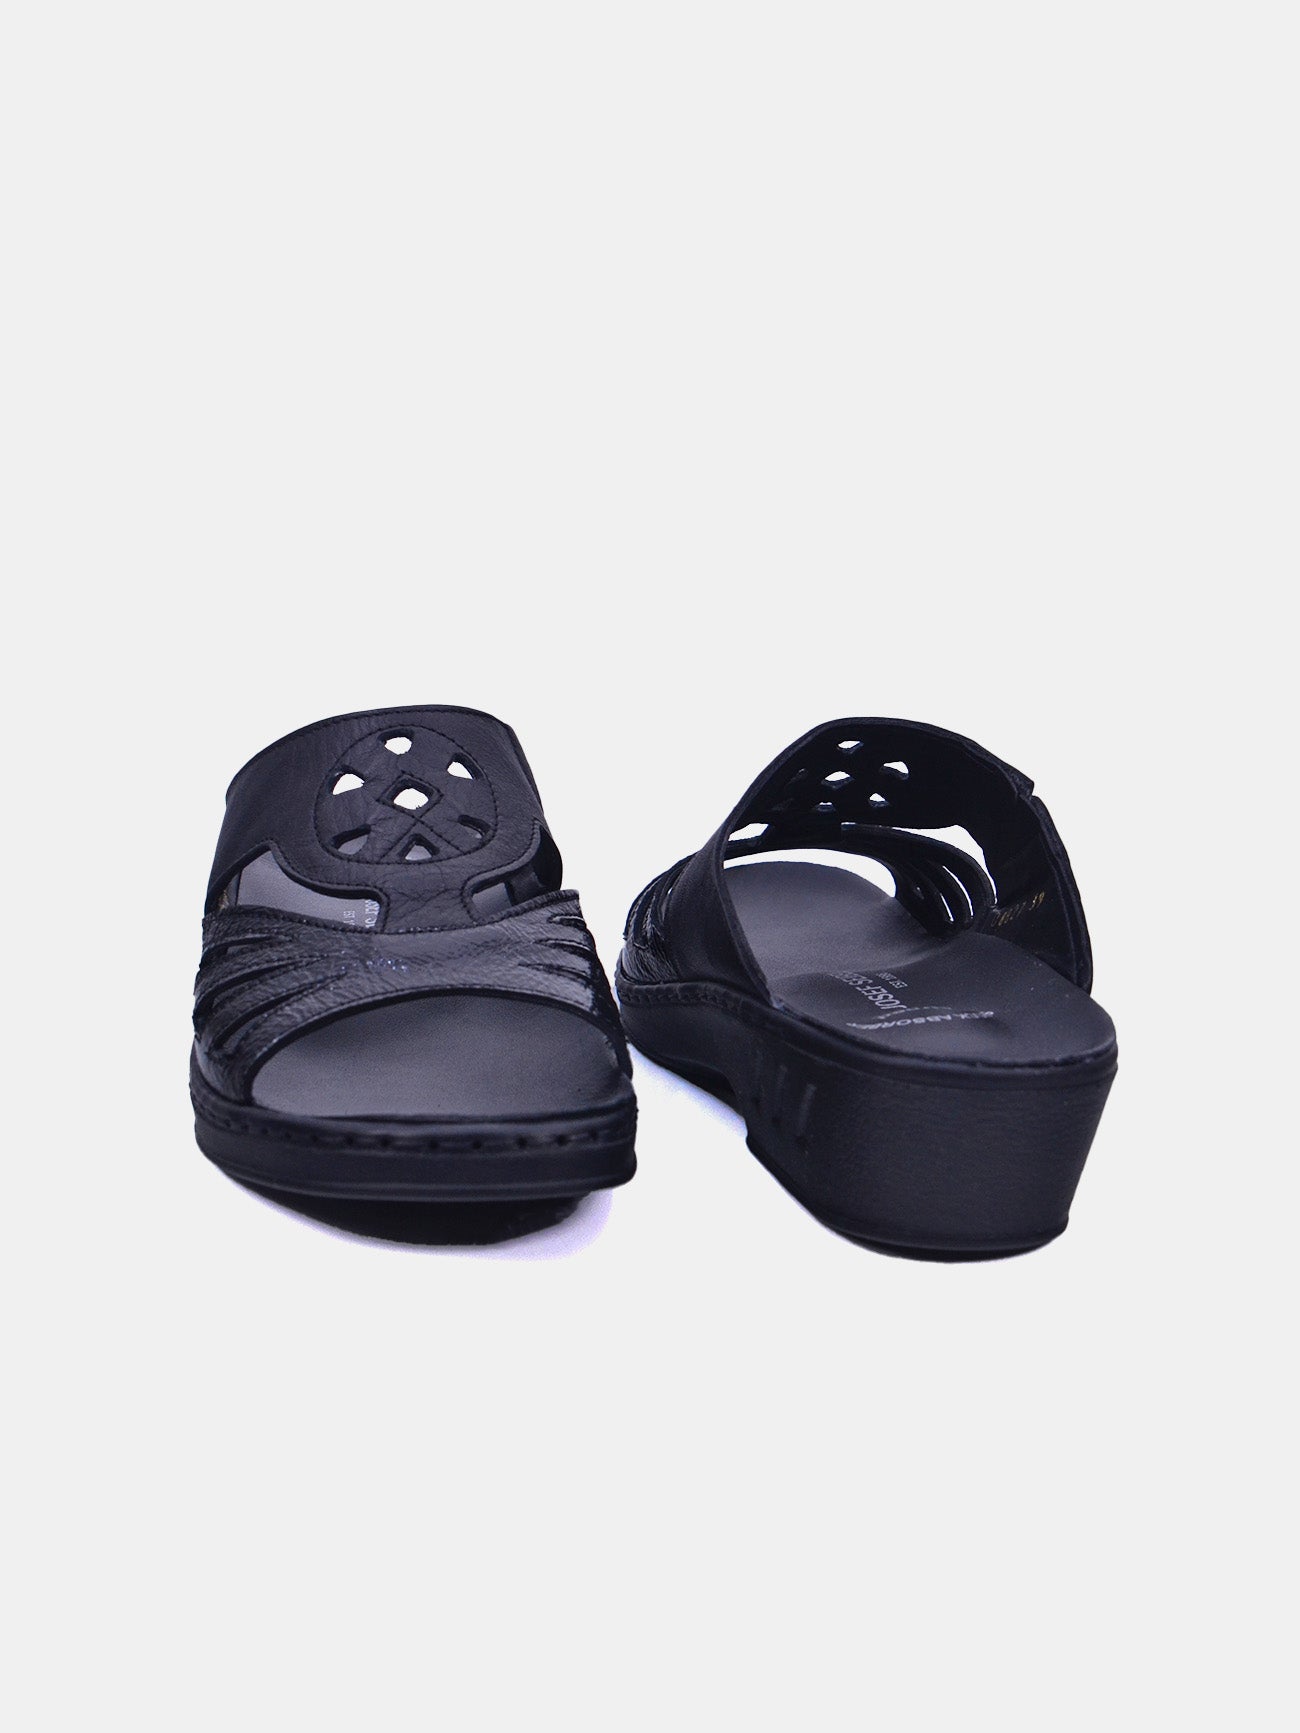 Josef Seibel 08827 Women's Sandals